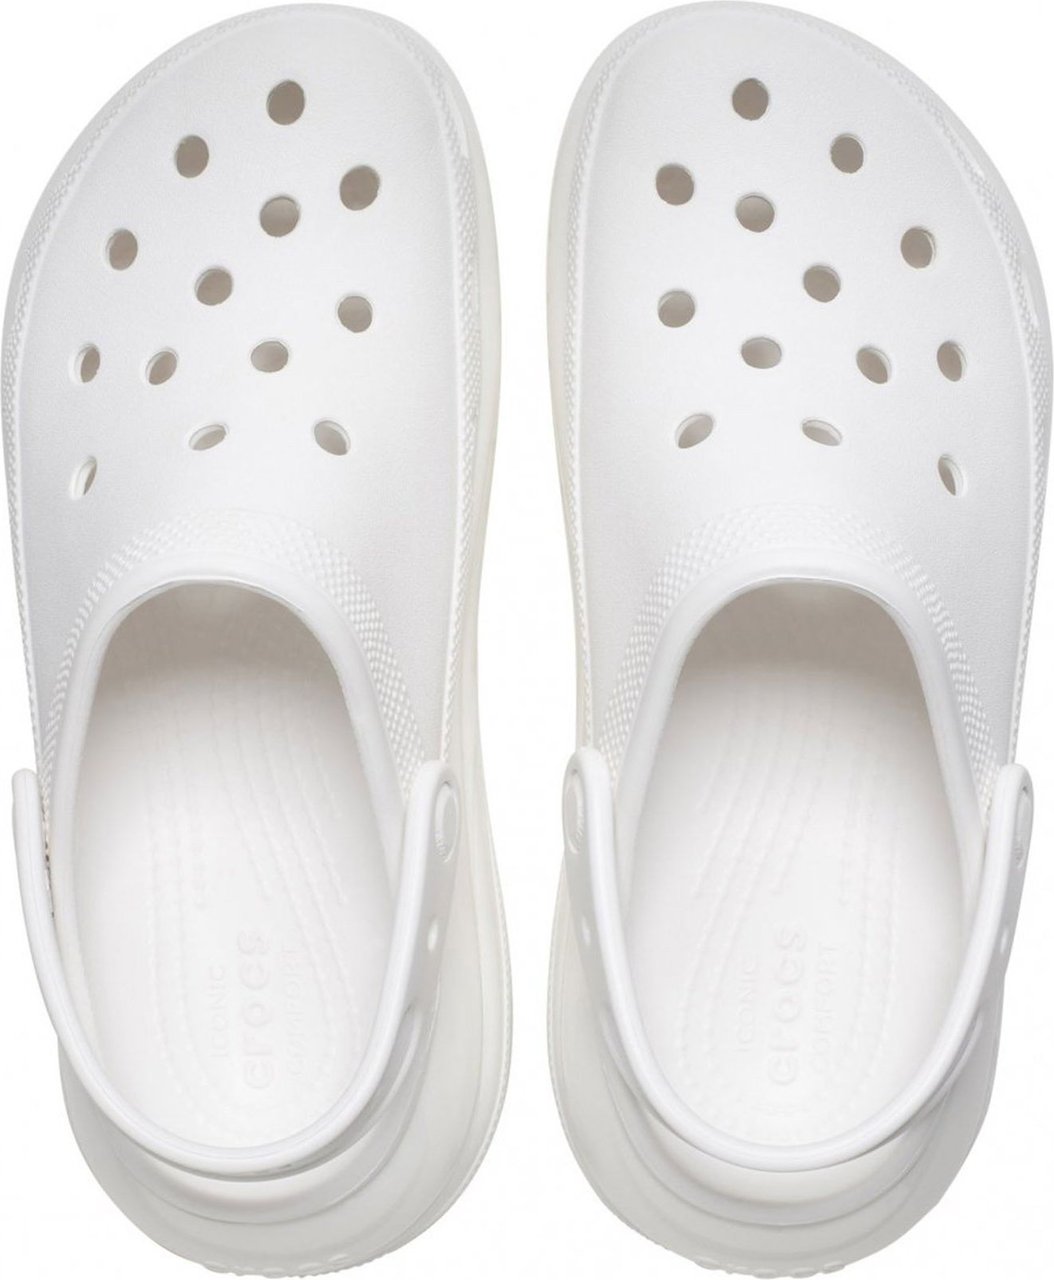 Crocs Crocs Sandals White Wit